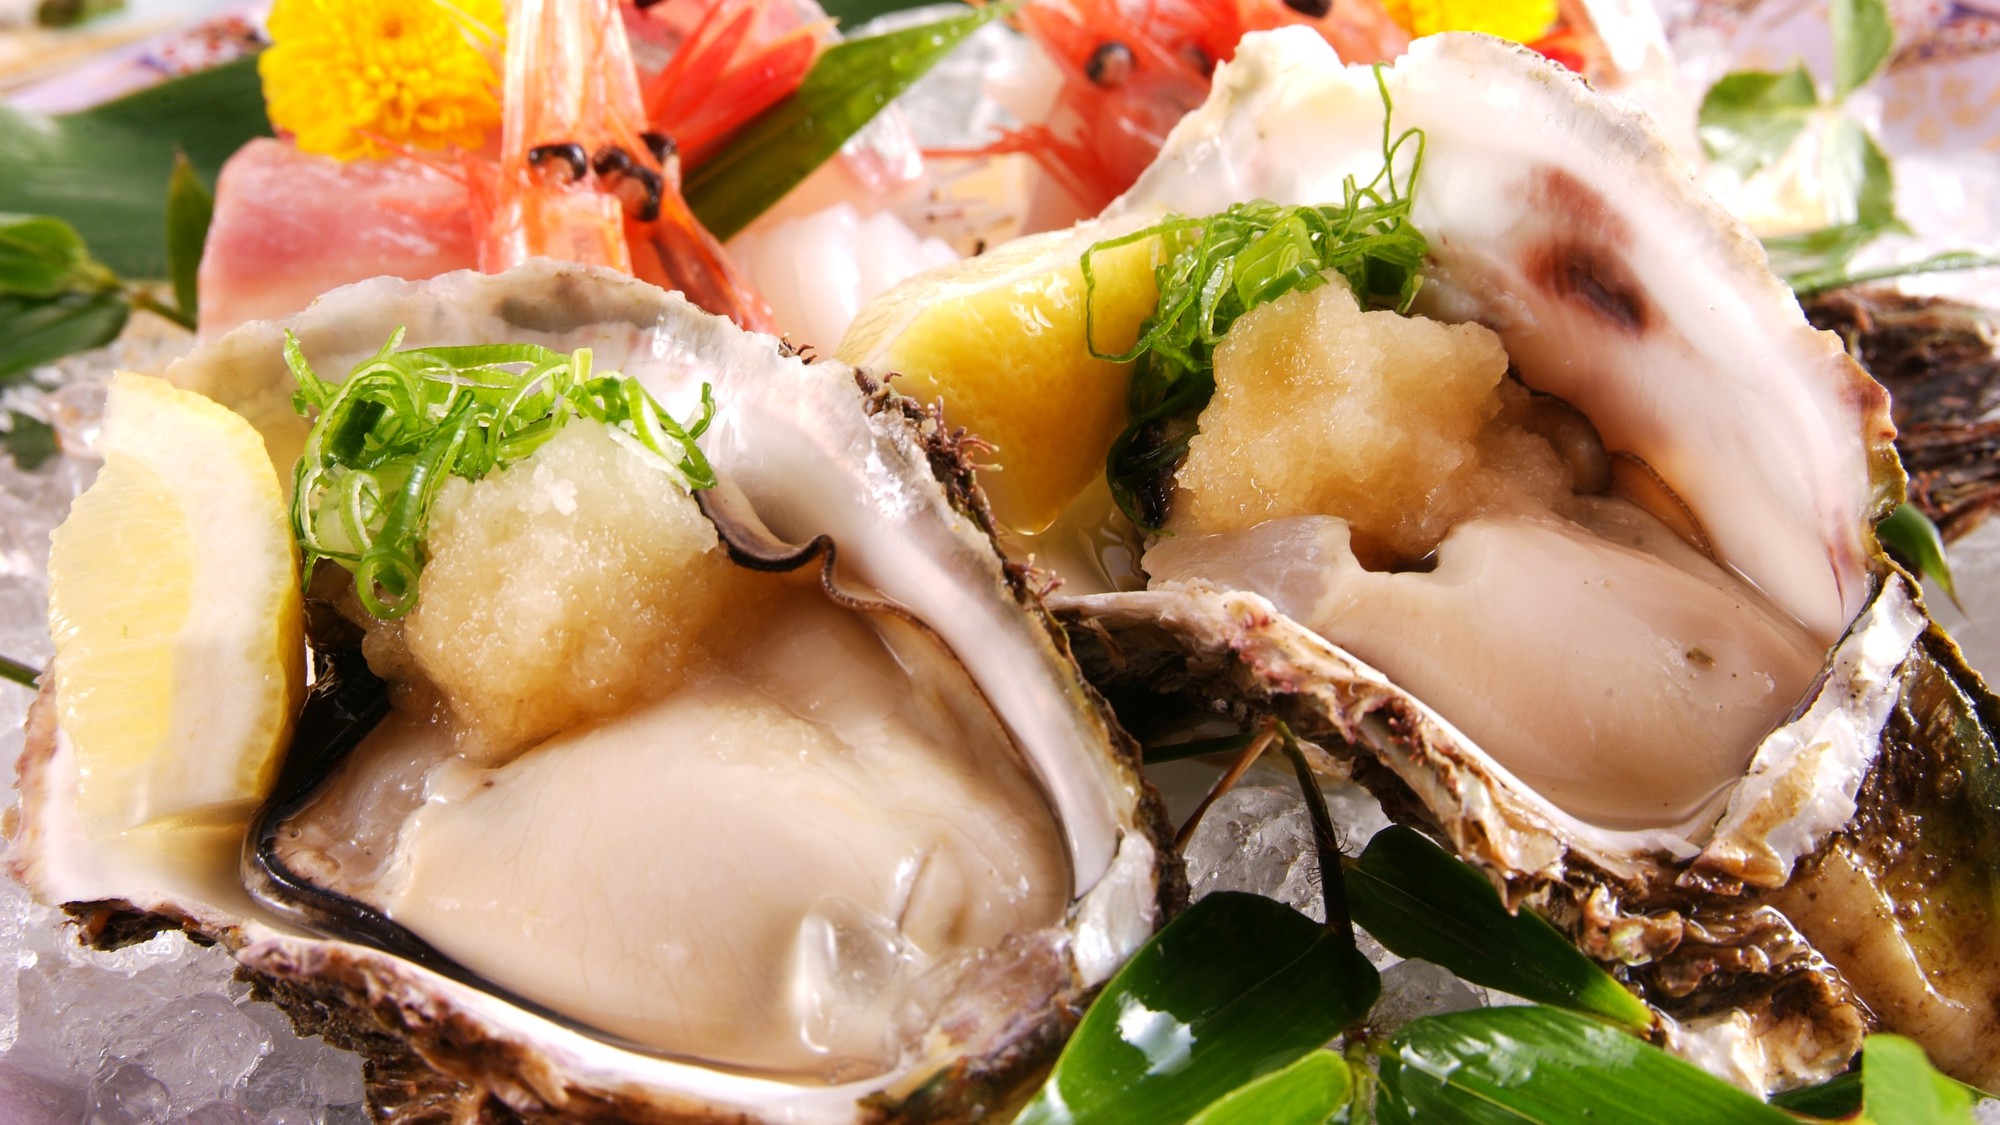 【夏限定】1日3組限定◆「天然岩牡蠣」尽くしコース◆岩牡蠣好きには堪らない！7種の岩牡蠣料理